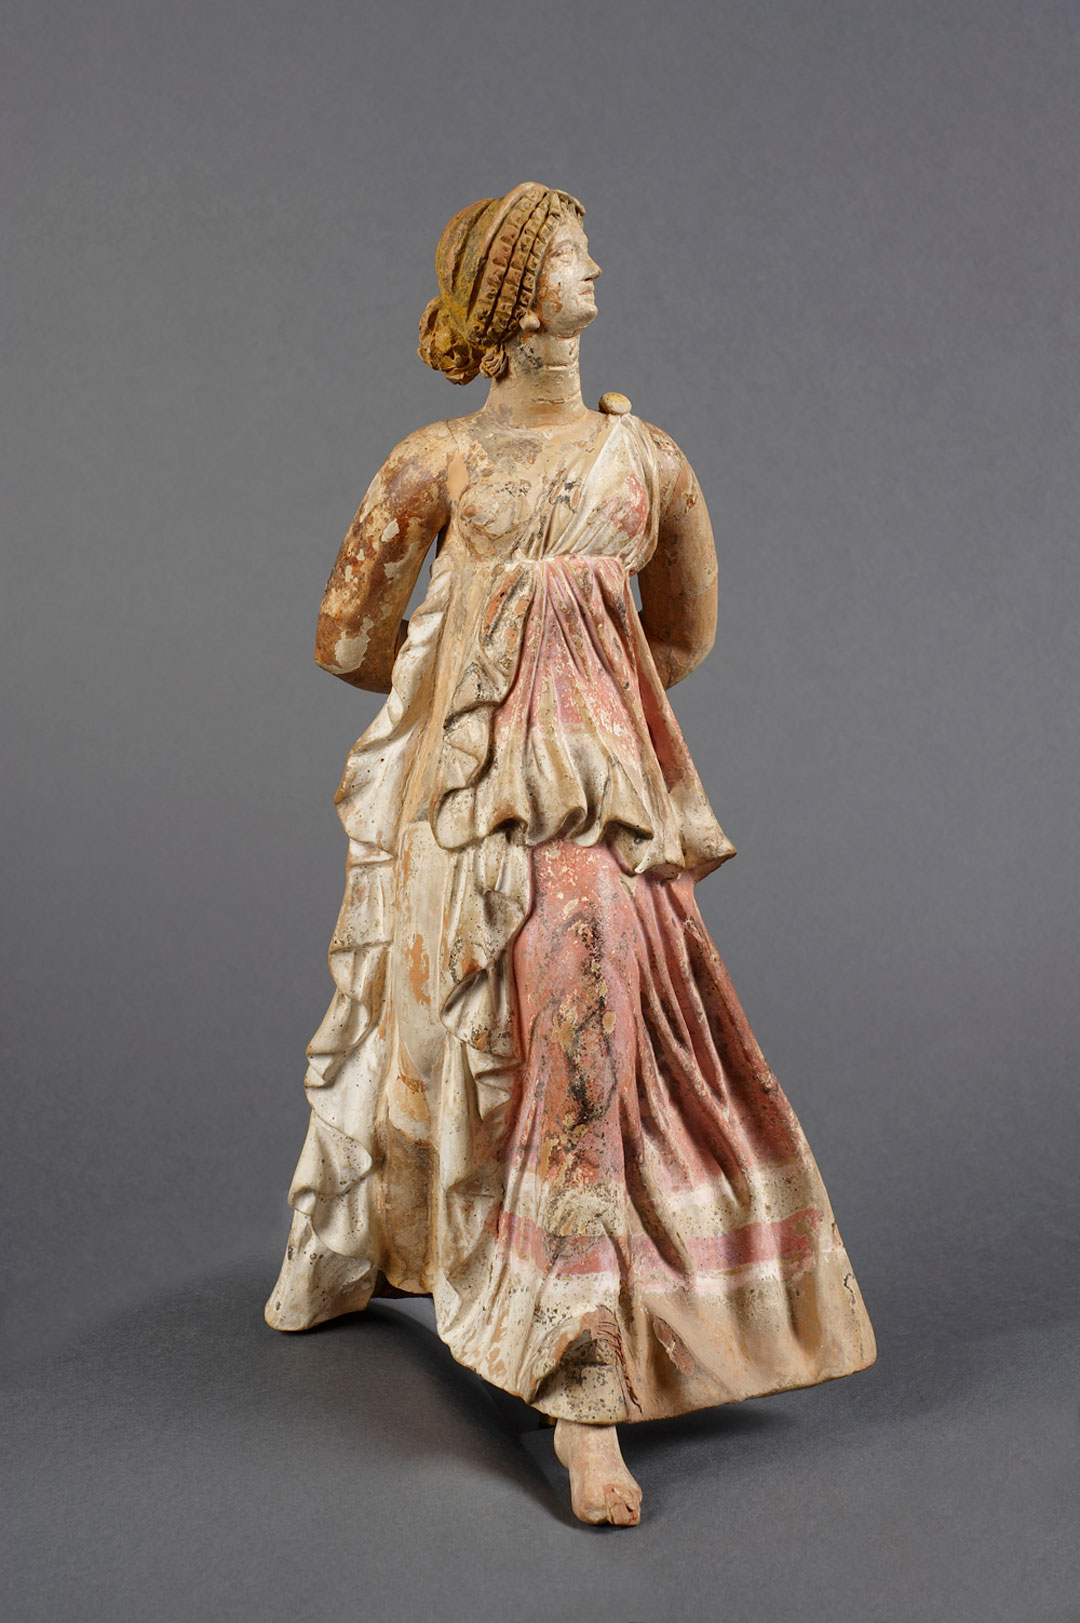 Figurine of Nike. 150-100 BCE. Ceramic, paint. Musée du Louvre, Département des Antiquités grecques, étrusques et romaines. Myr 163. 